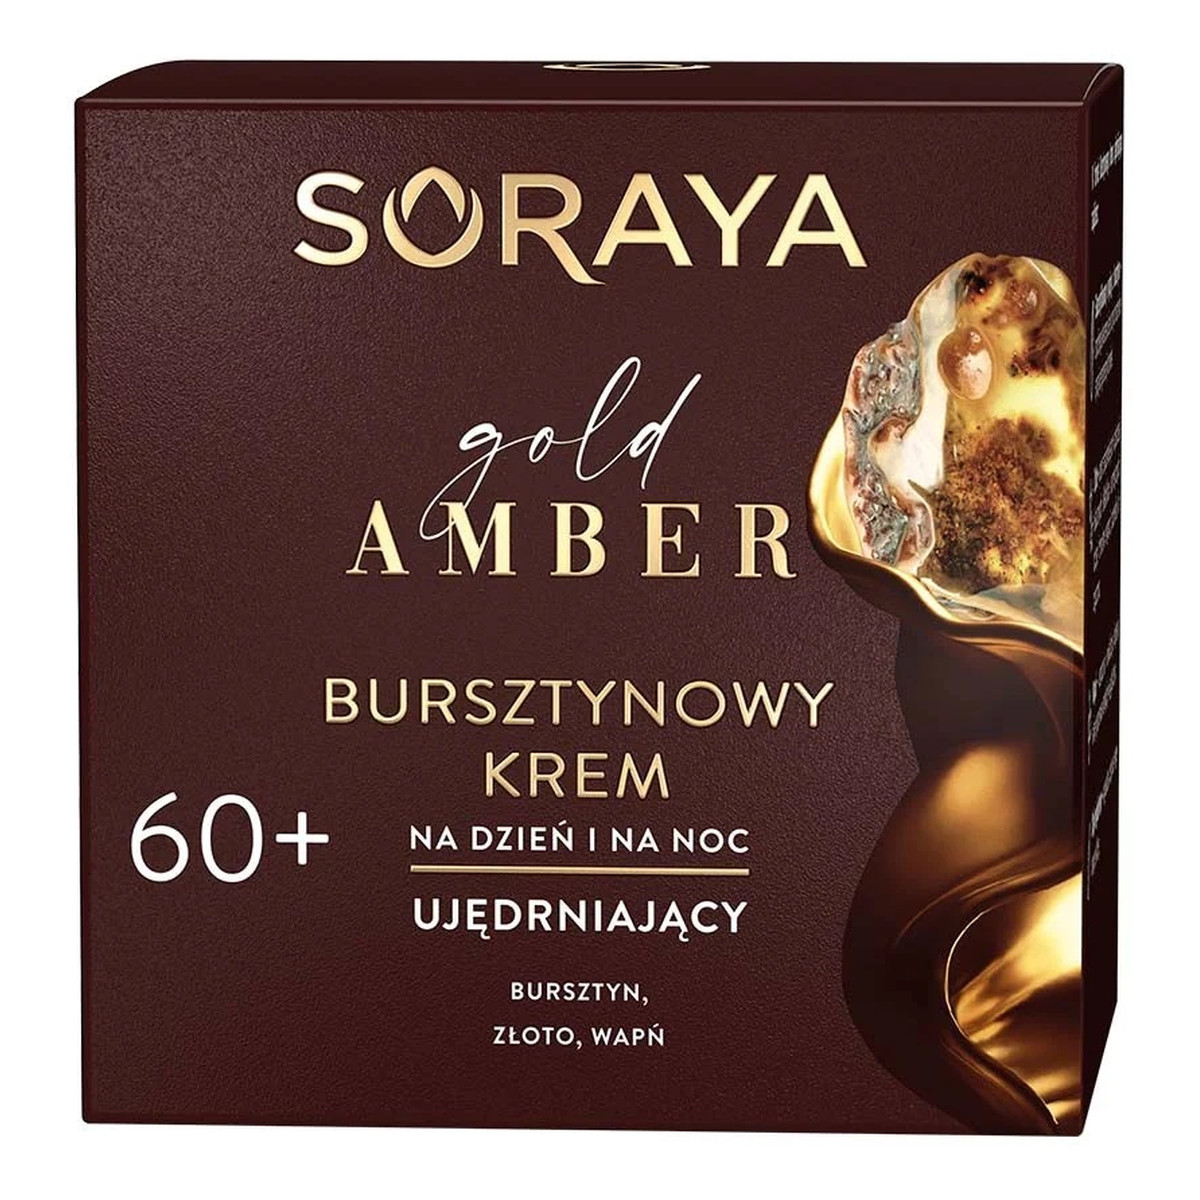 Soraya Gold Amber Bursztynowy krem ujędrniający na dzień i na noc 60+ 50ml